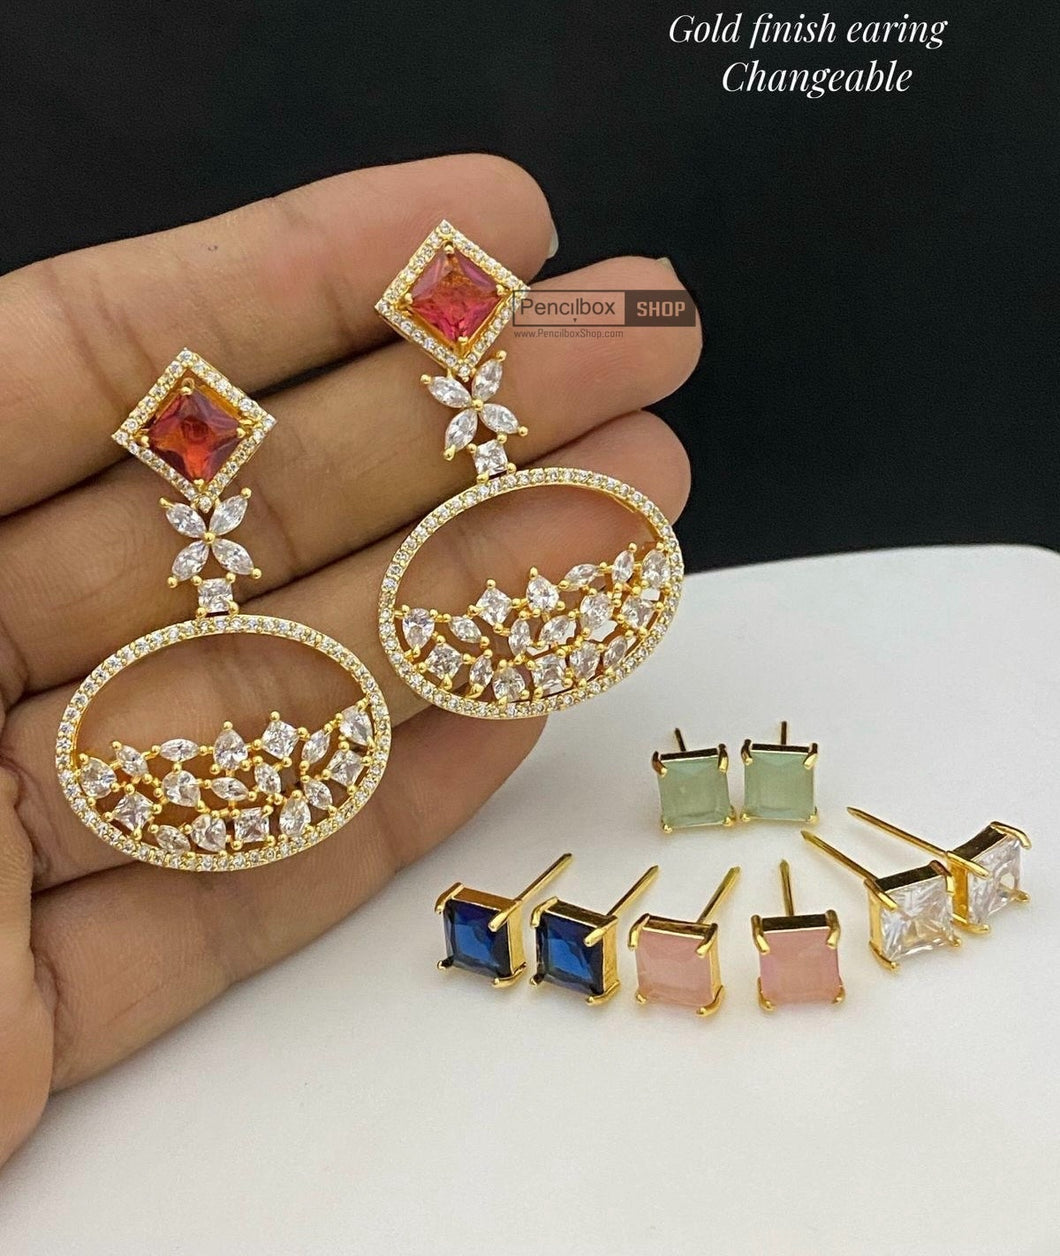 Changeable golden american diamond Cz earrings